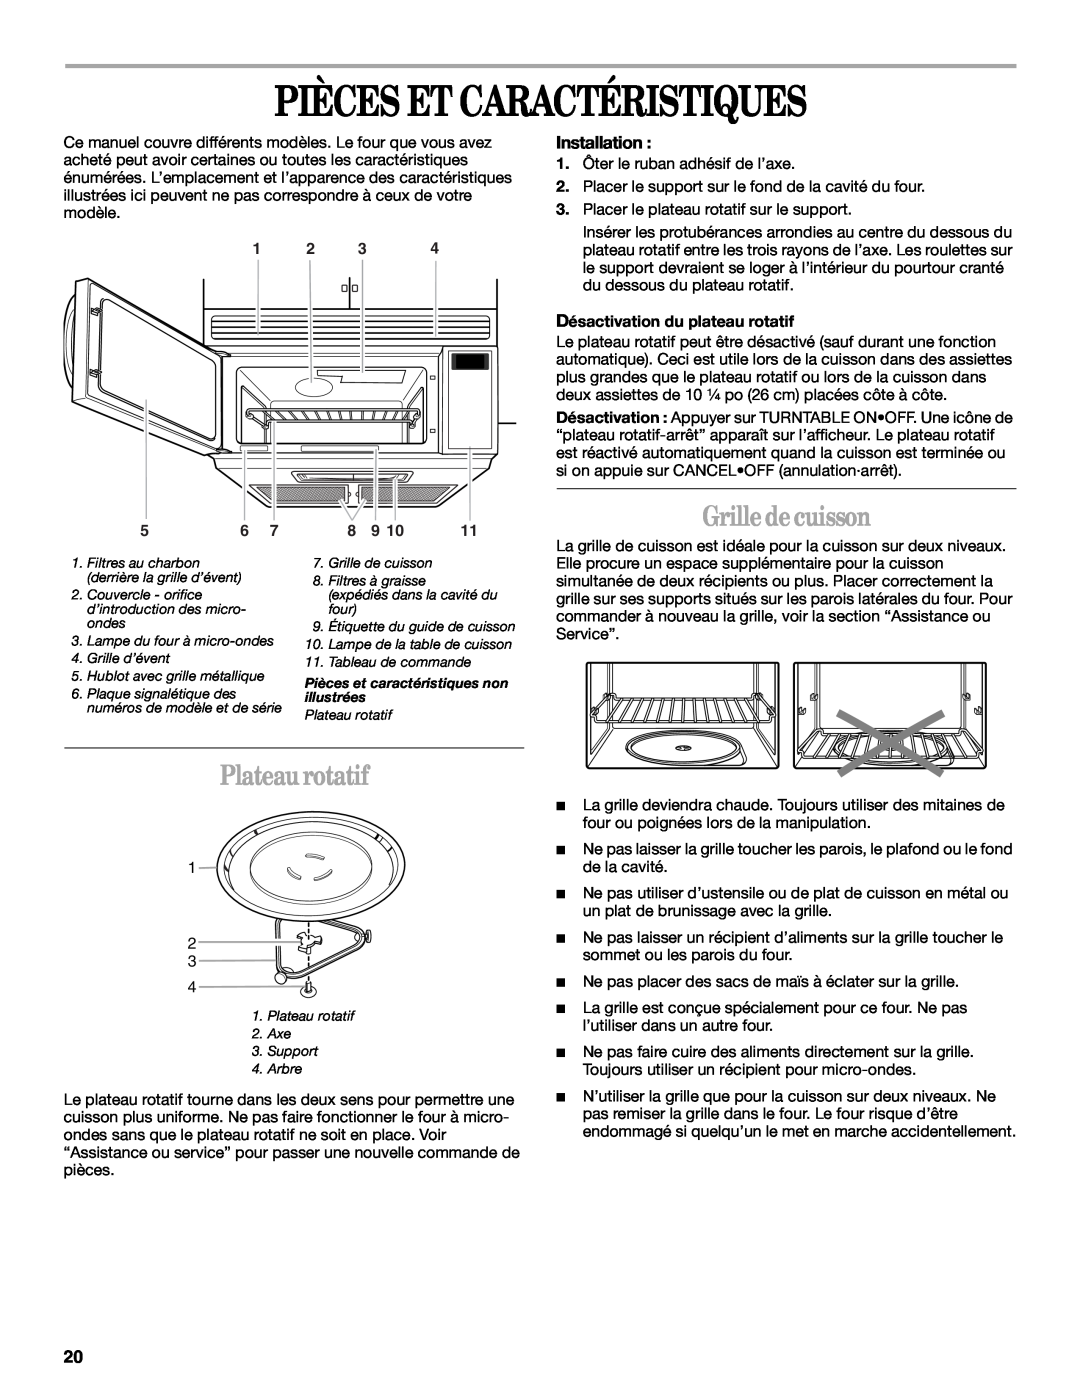 United Appliances YMH1150XM manual Pièces Et Caractéristiques, Grille de cuisson, Plateau rotatif, Installation 